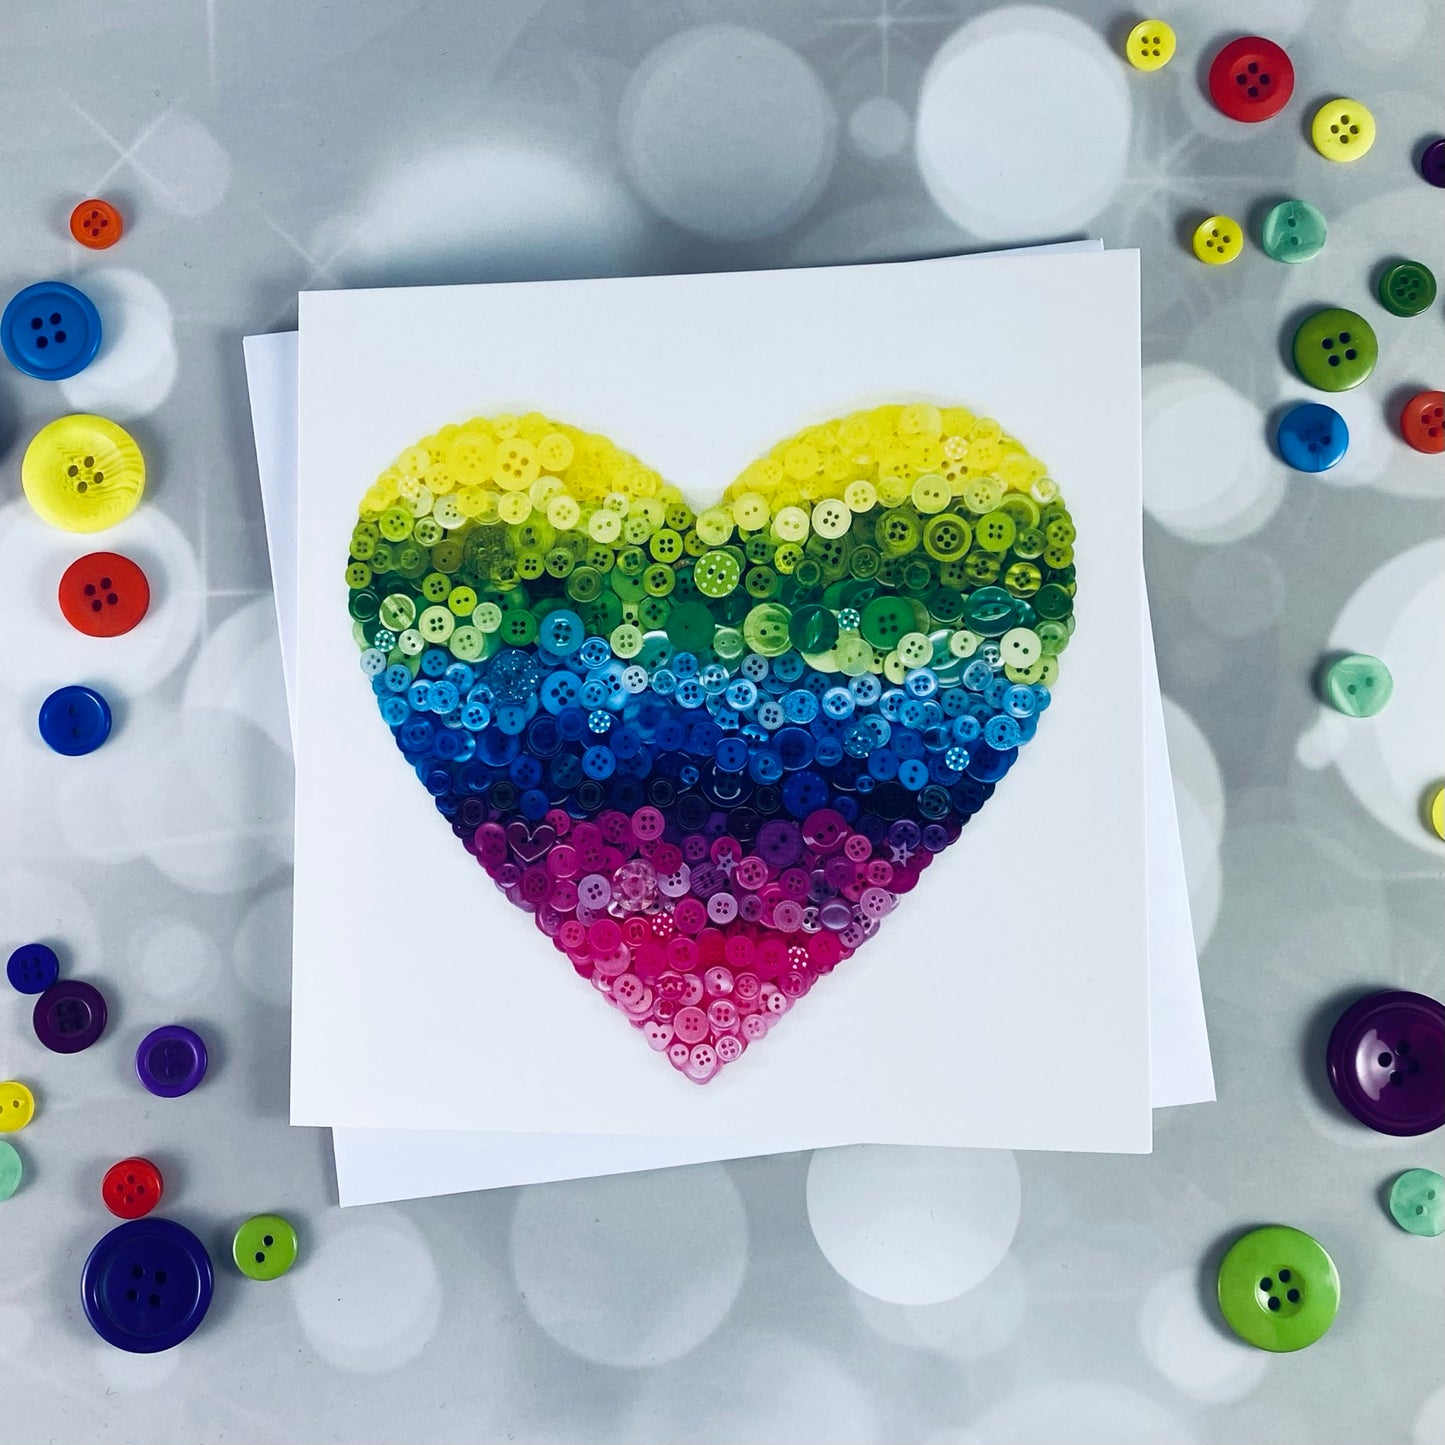 rainbow-birthday-card